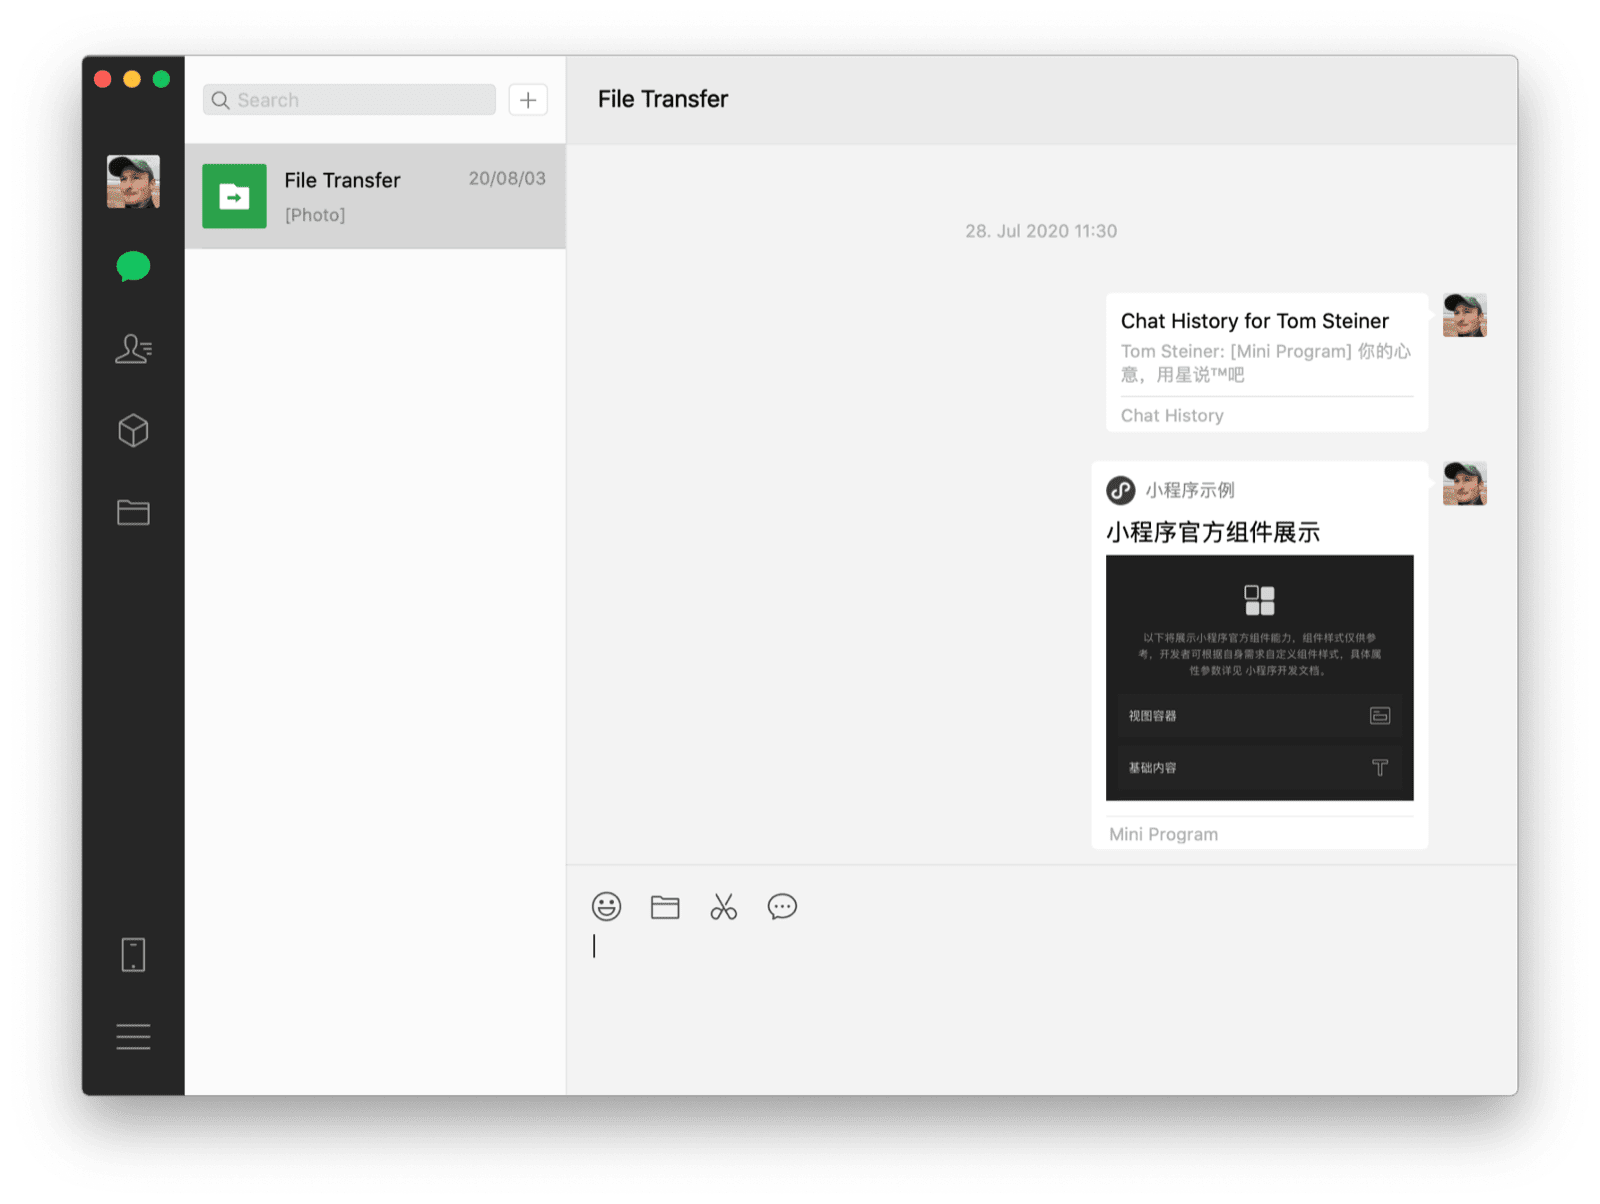 Настольный клиент WeChat для macOS показывает чат с самим собой с помощью общего мини-приложения и историю чата в виде двух видимых сообщений.